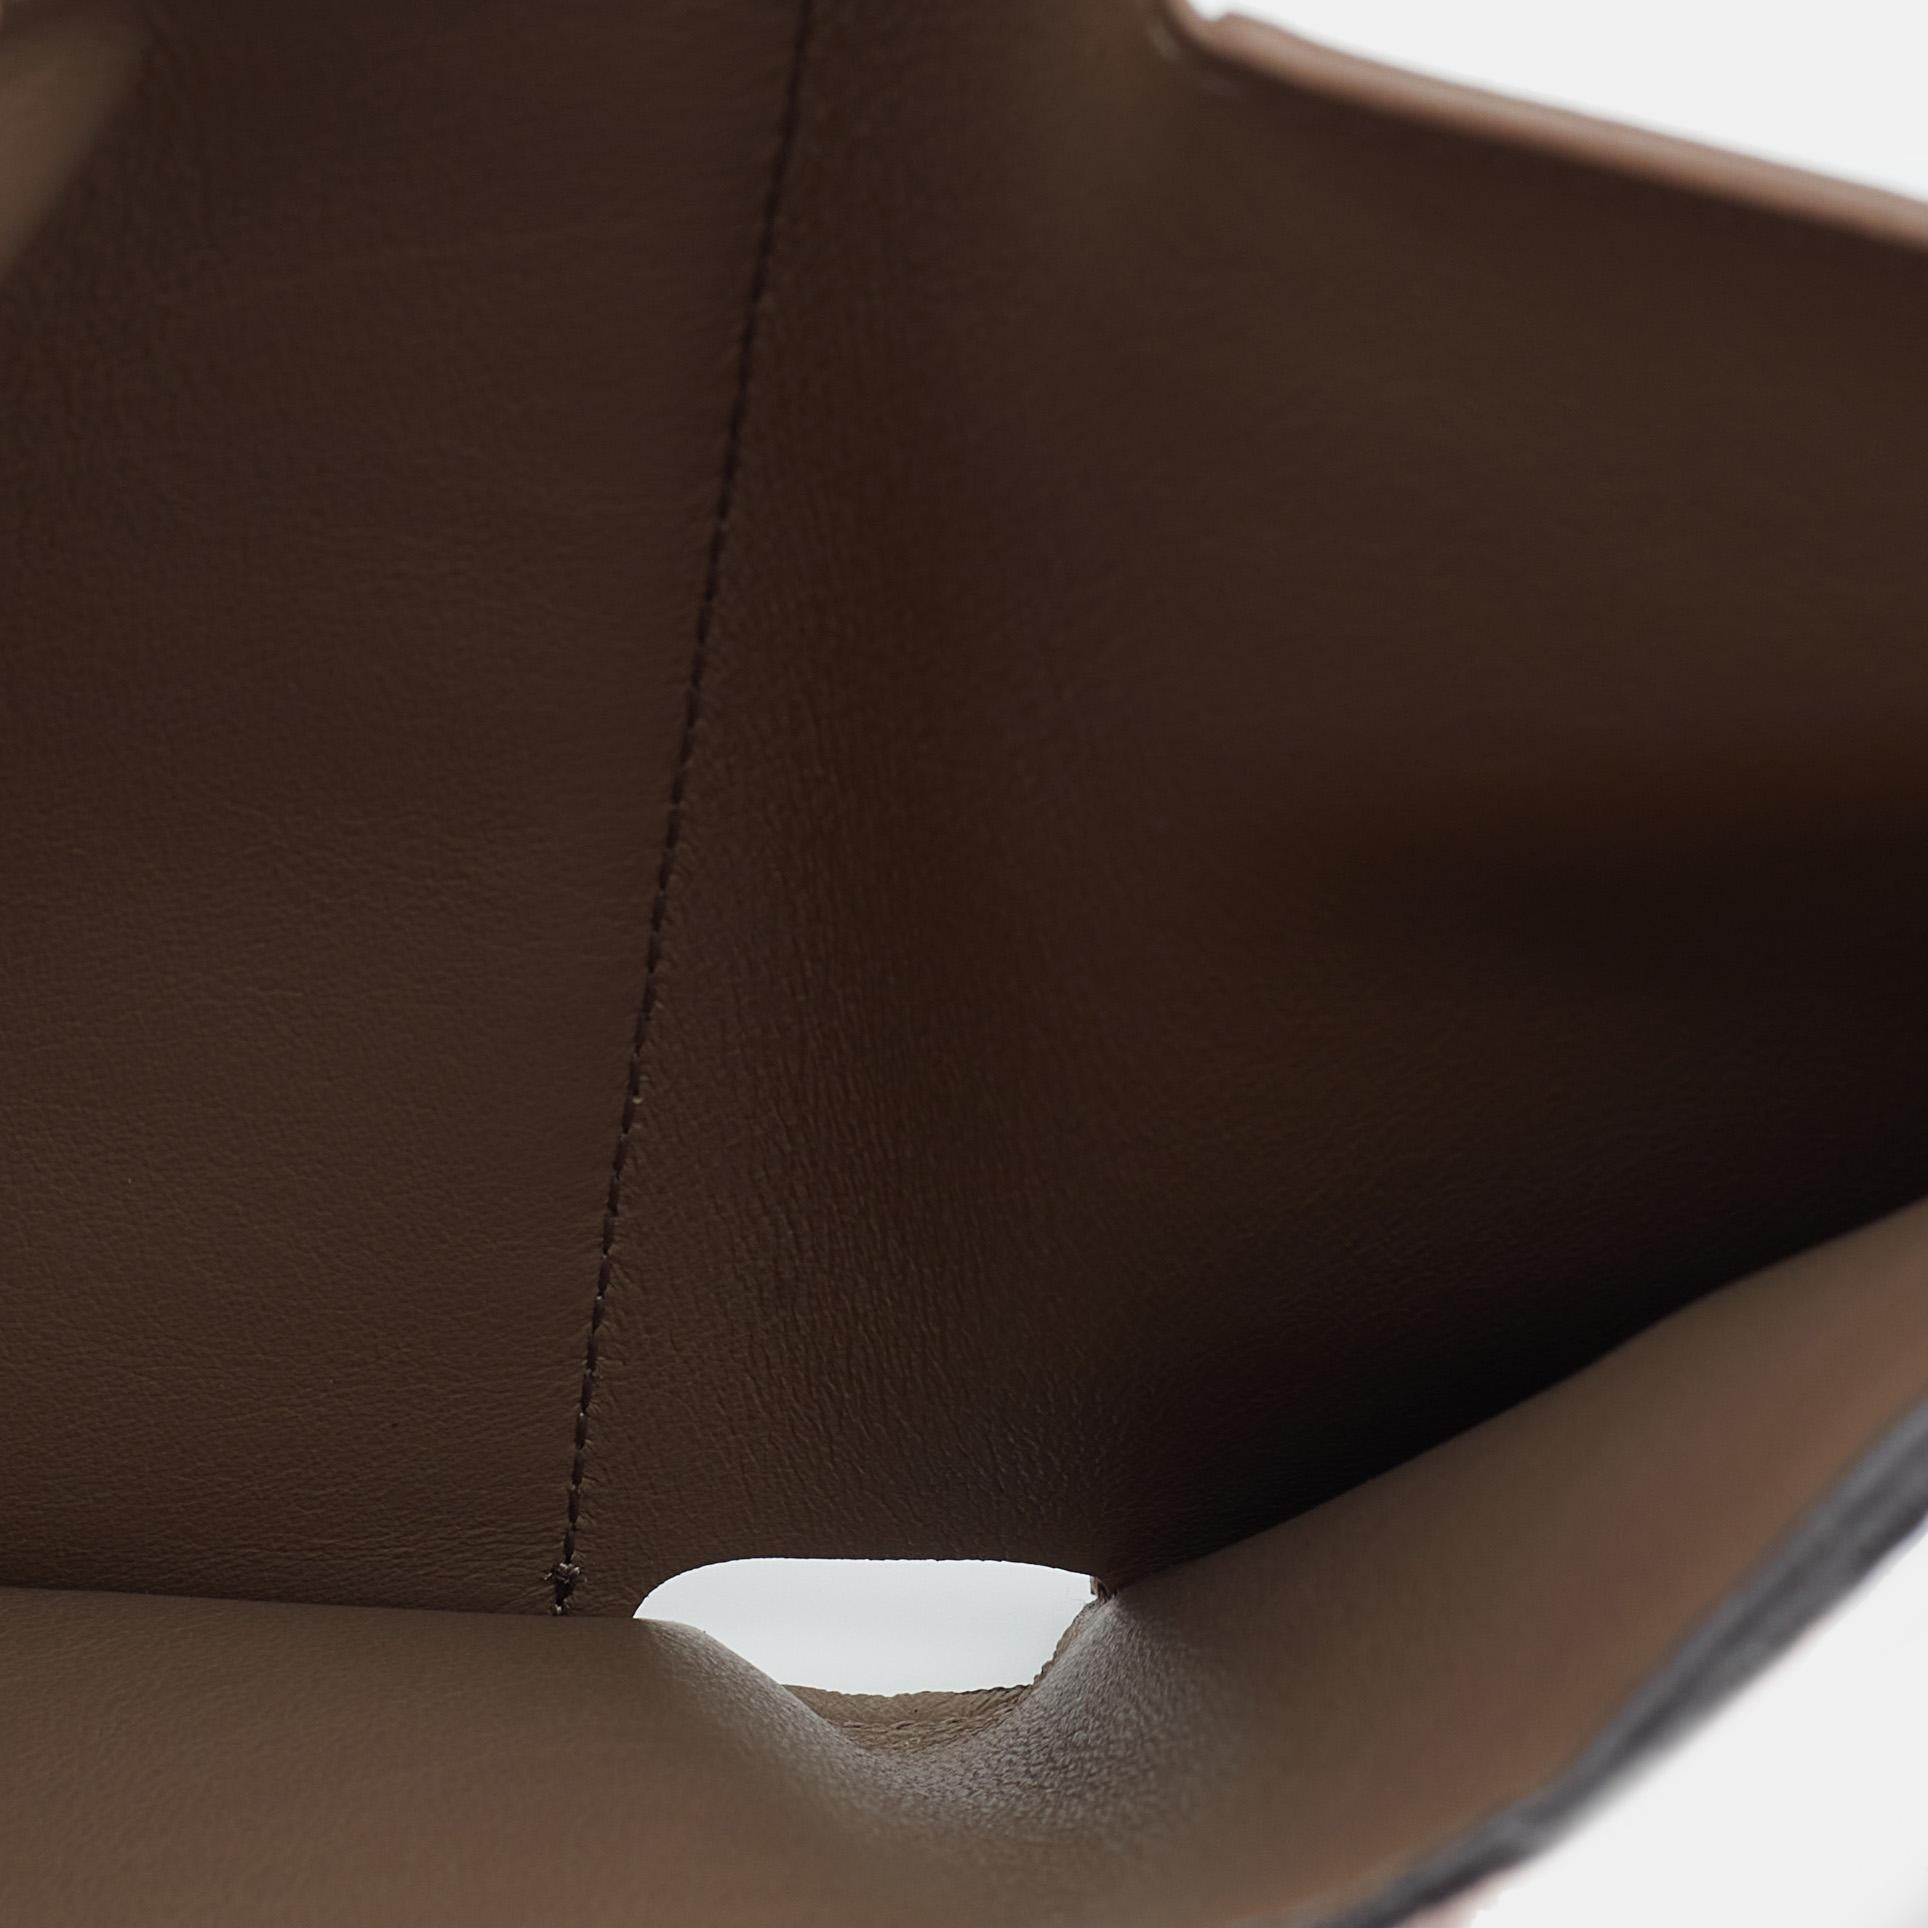 Women's Louis Vuitton Magnolia Leather Capucines Compact Wallet